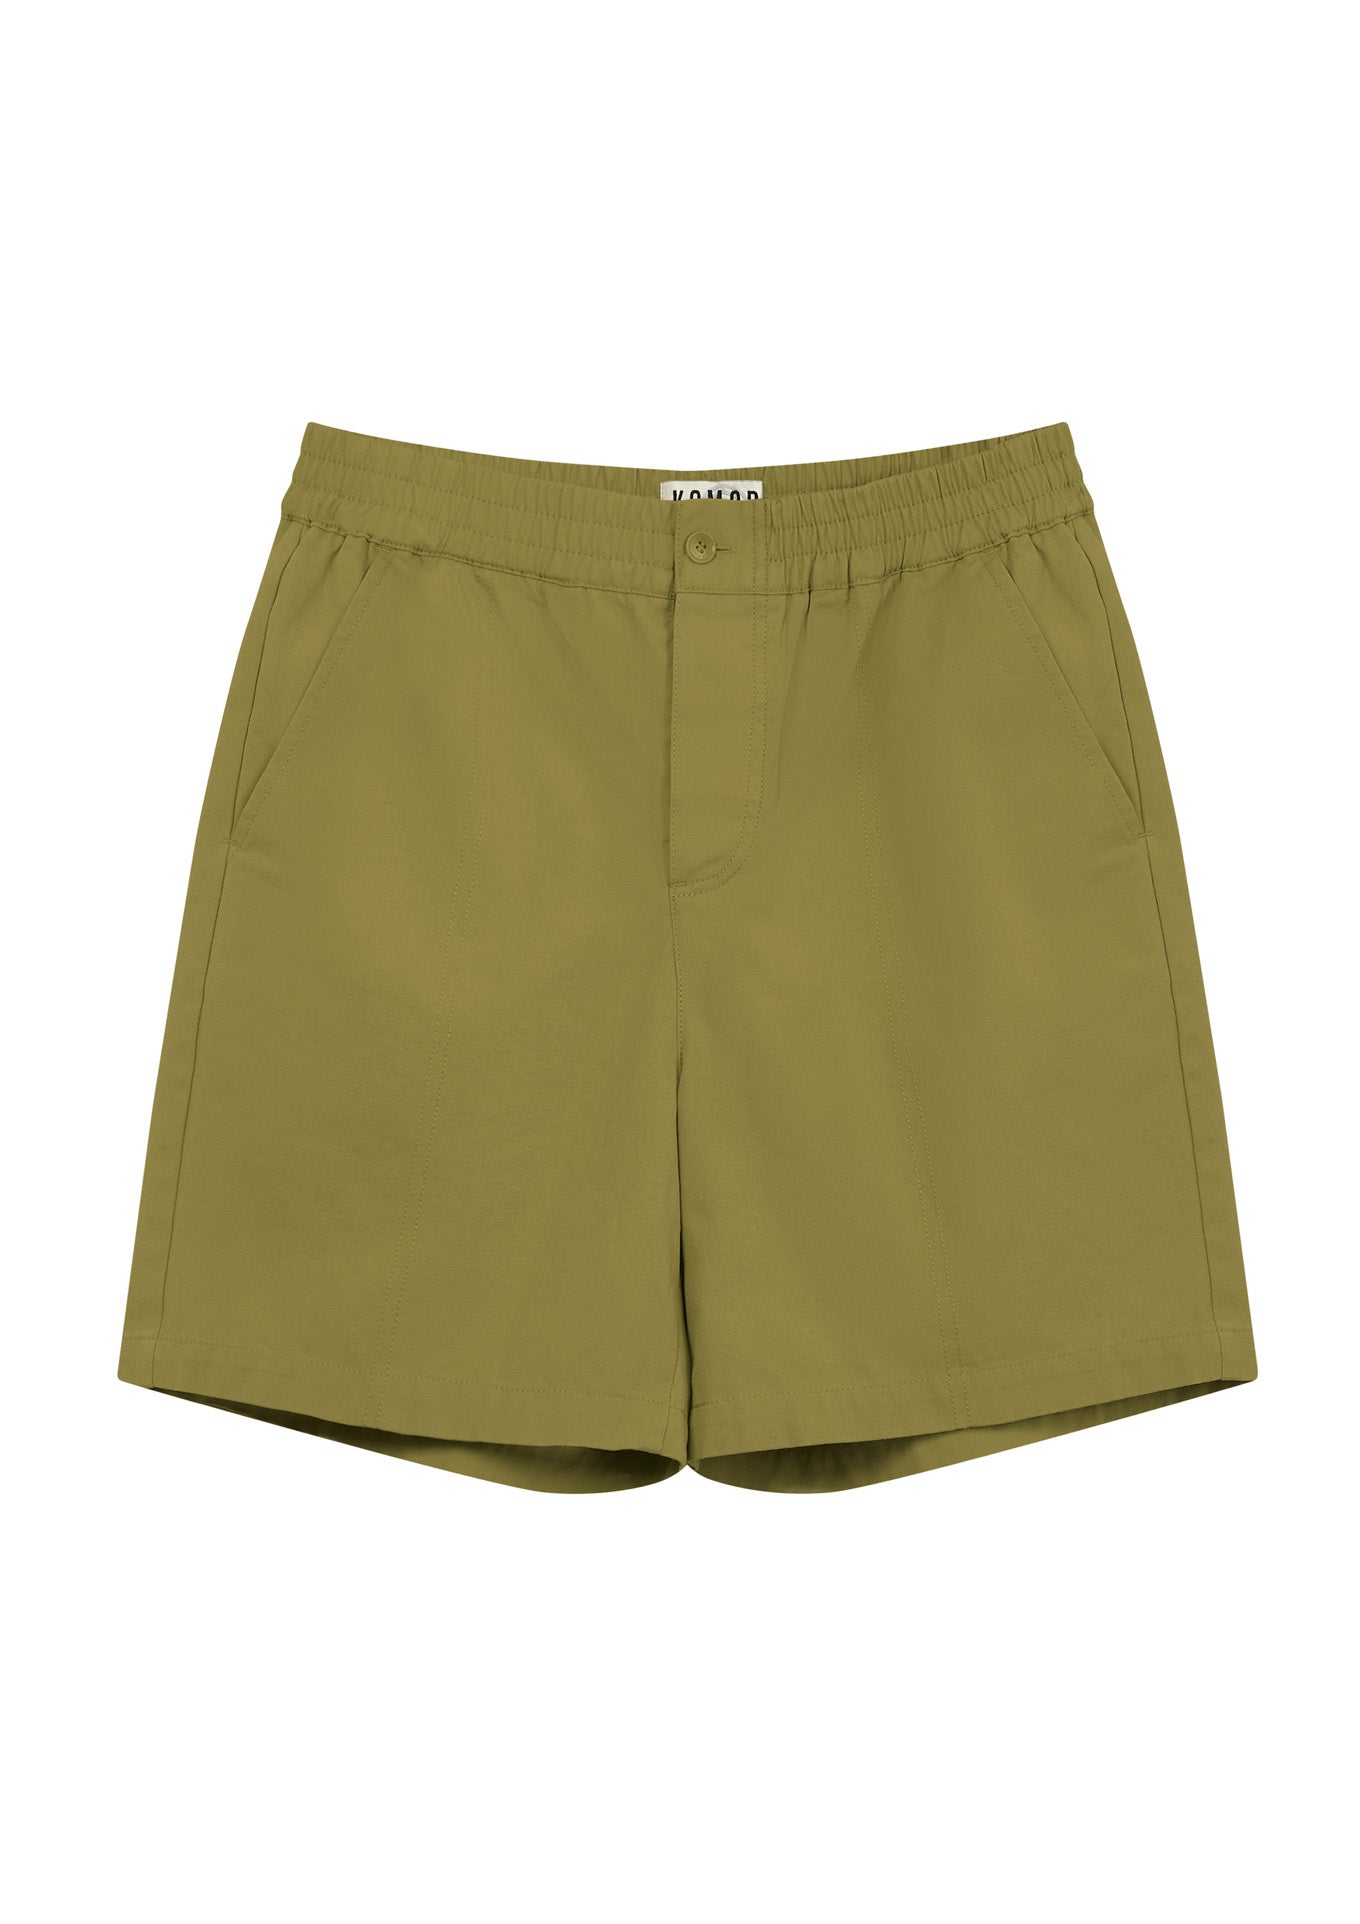 Khaki grüne Shorts Mario aus 100% Bio-Baumwolle von Komodo